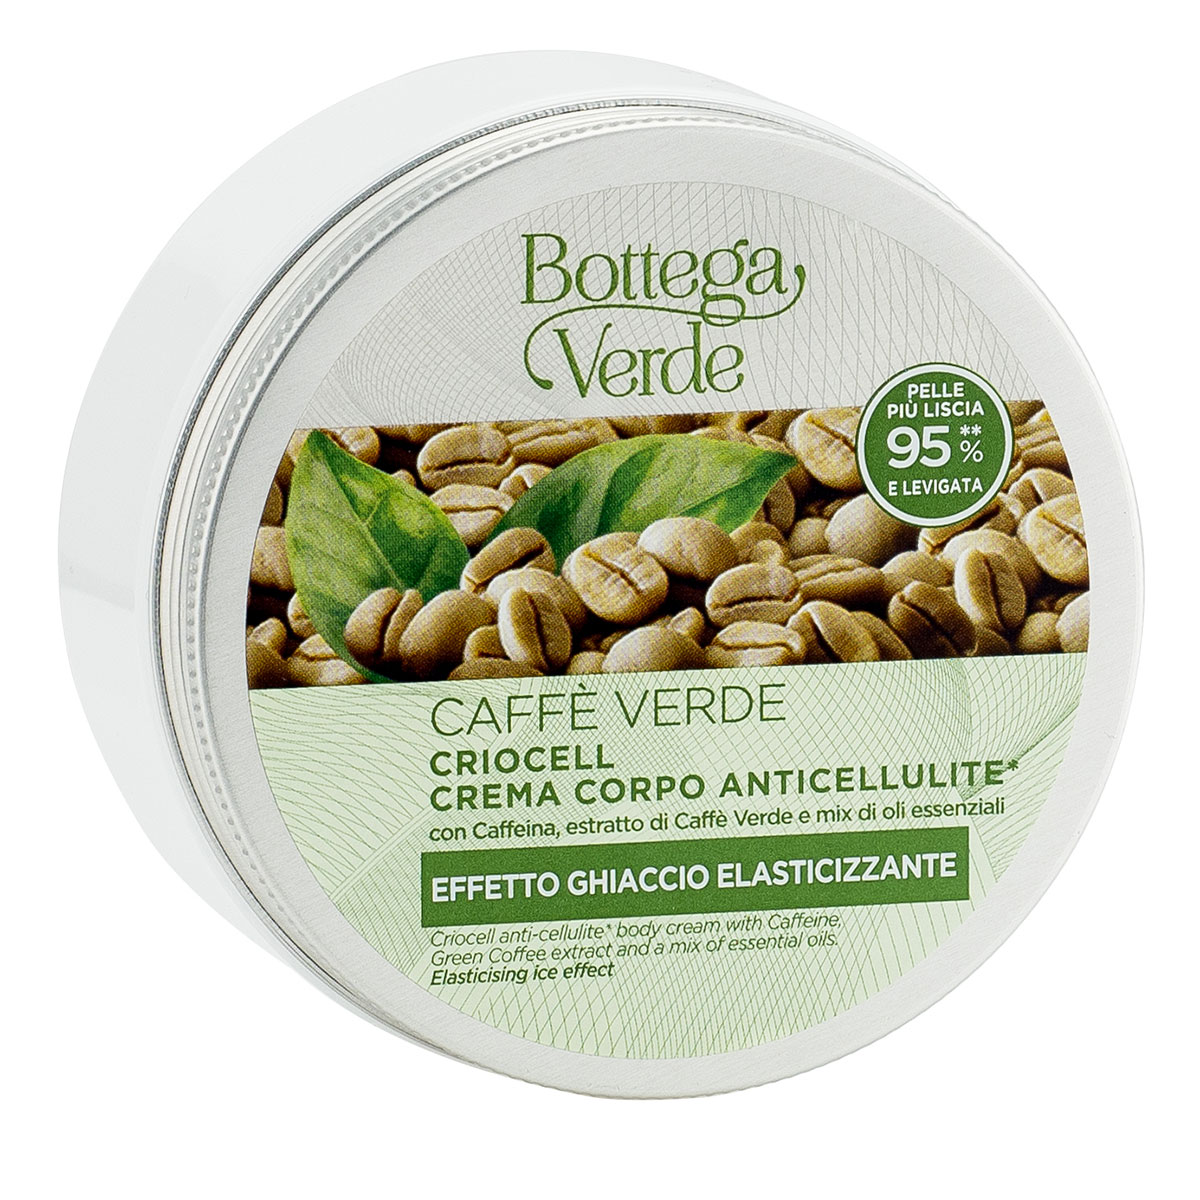 Crio-gel anticelulitic cu extract de cafea verde si mix de uleiuri esentiale Anticelulita imagine noua marillys.ro